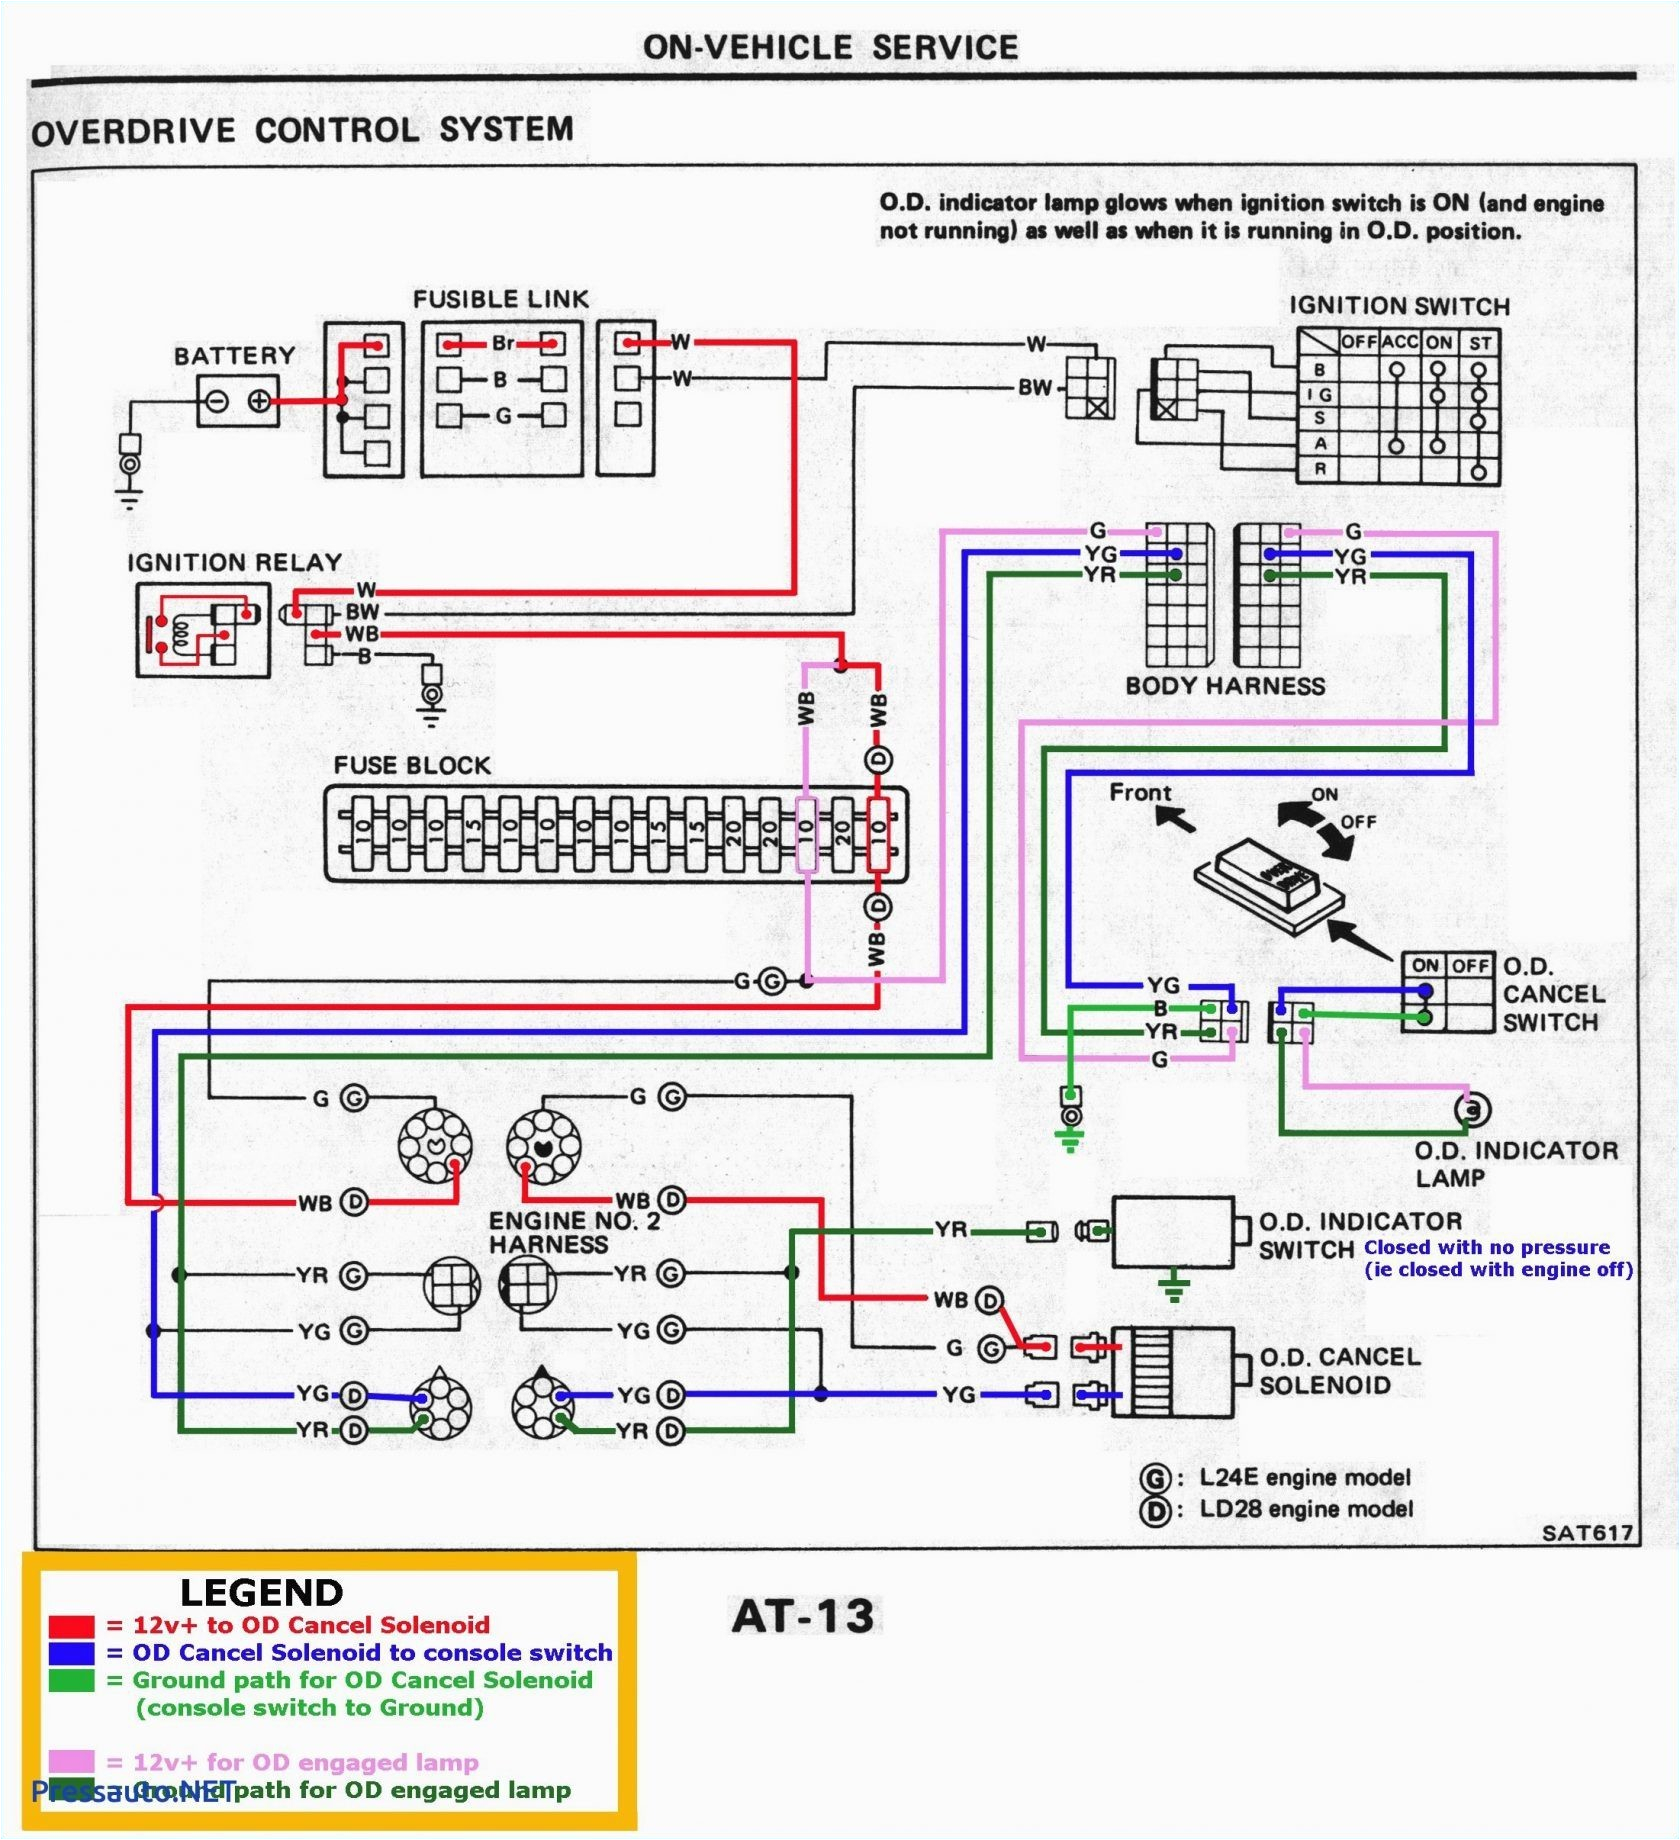 q1 ovleng headset mic wiring diagram